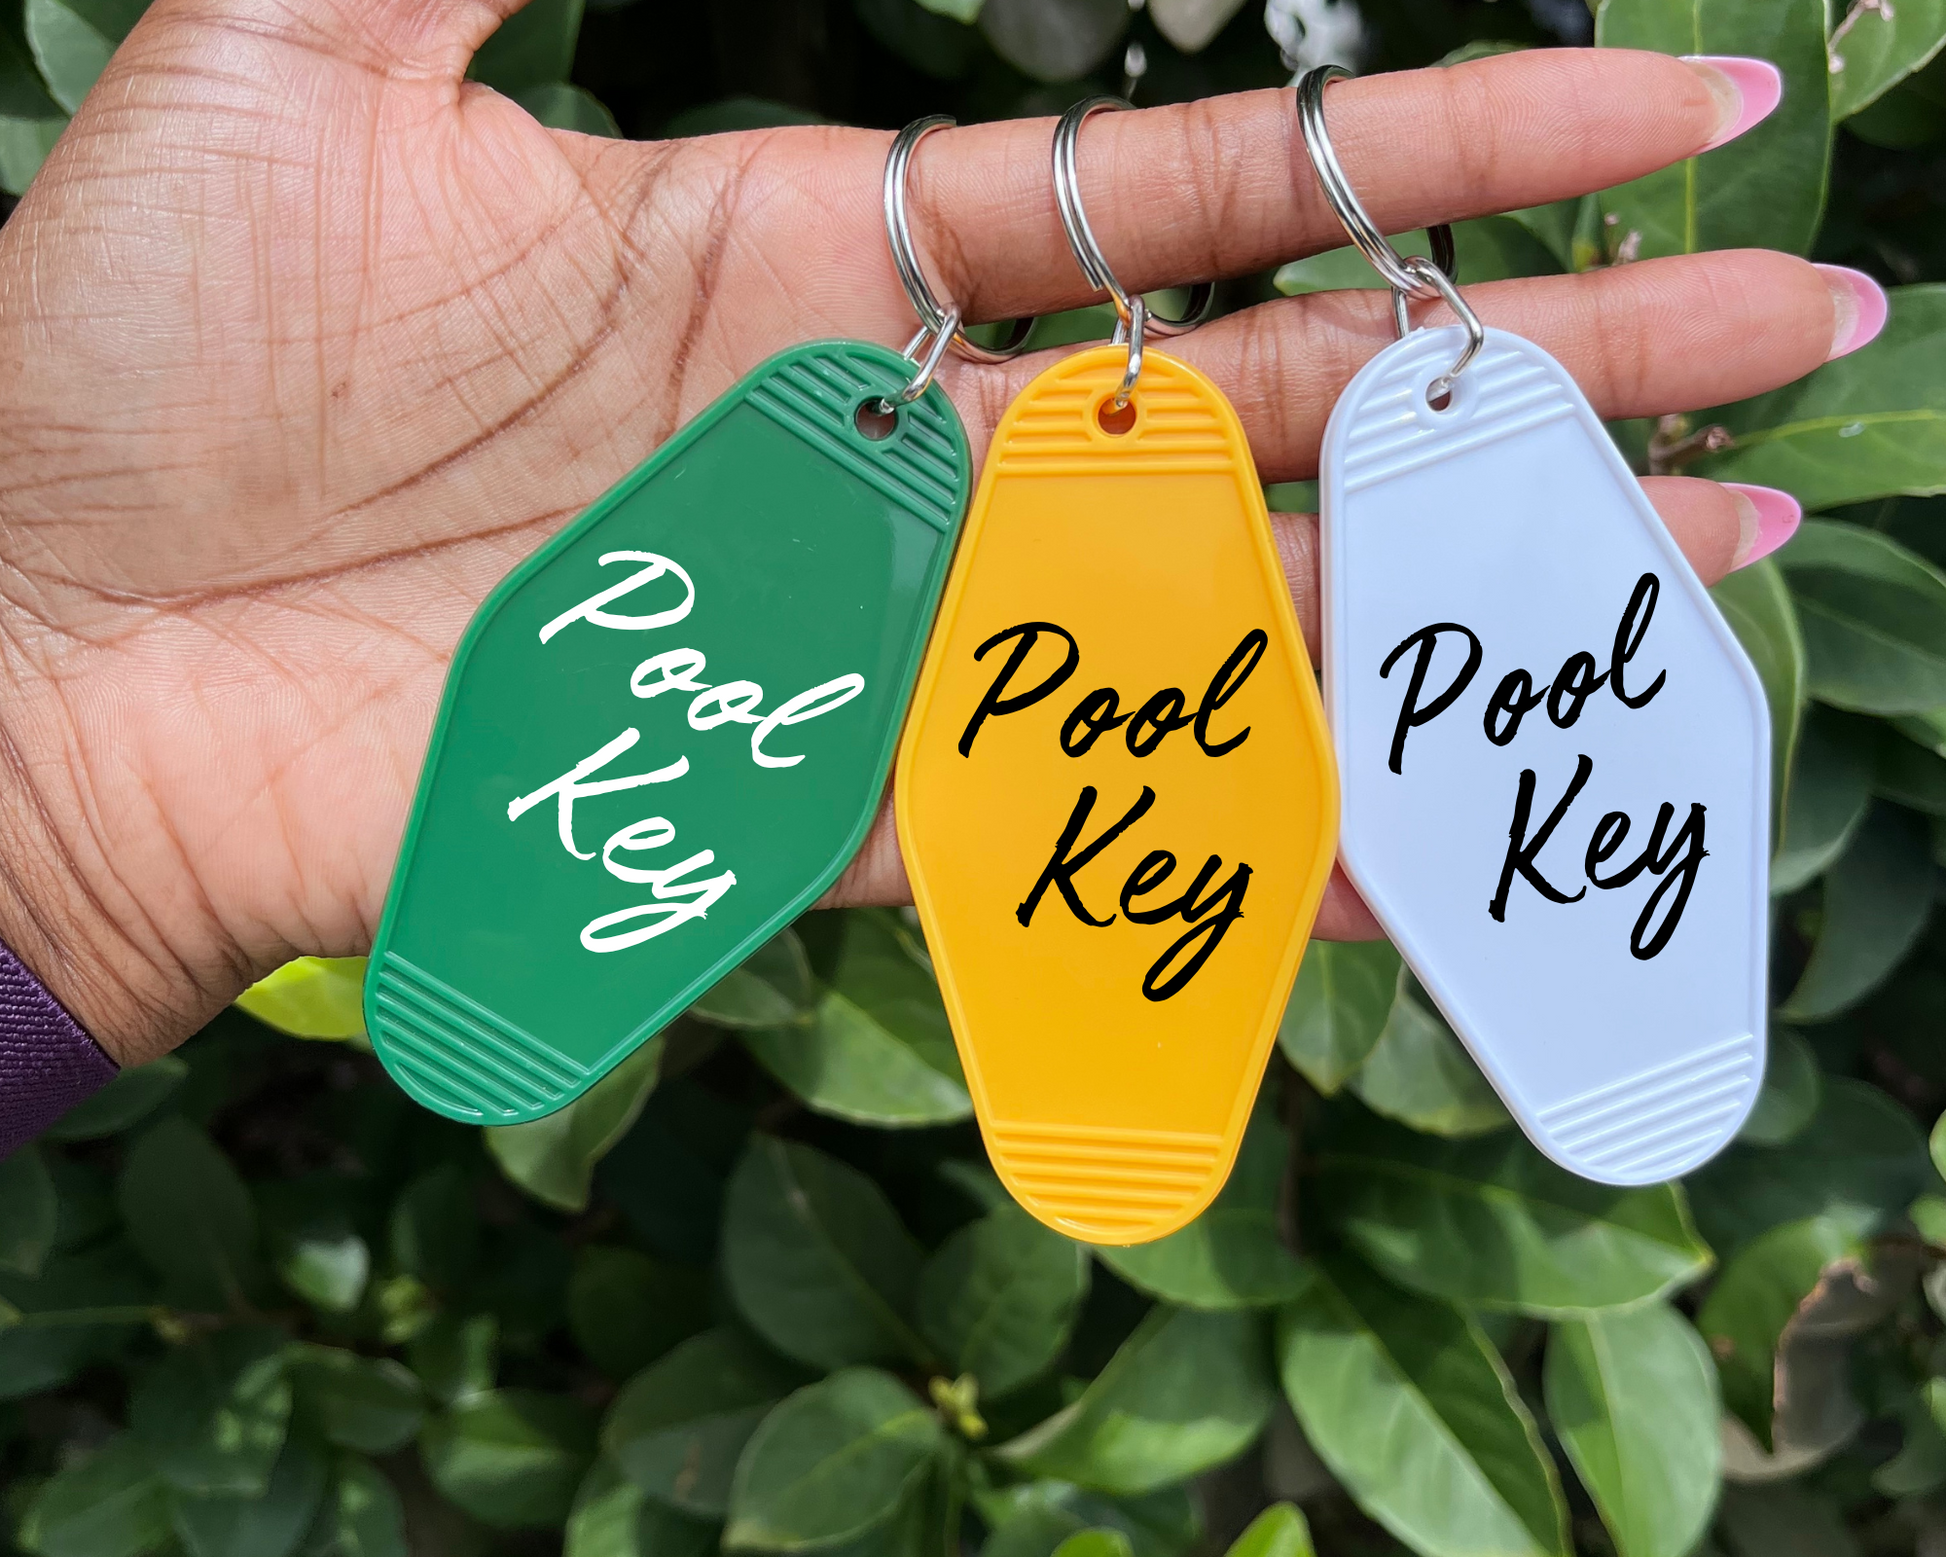 Pool Key Keychain - The Glam Thangz